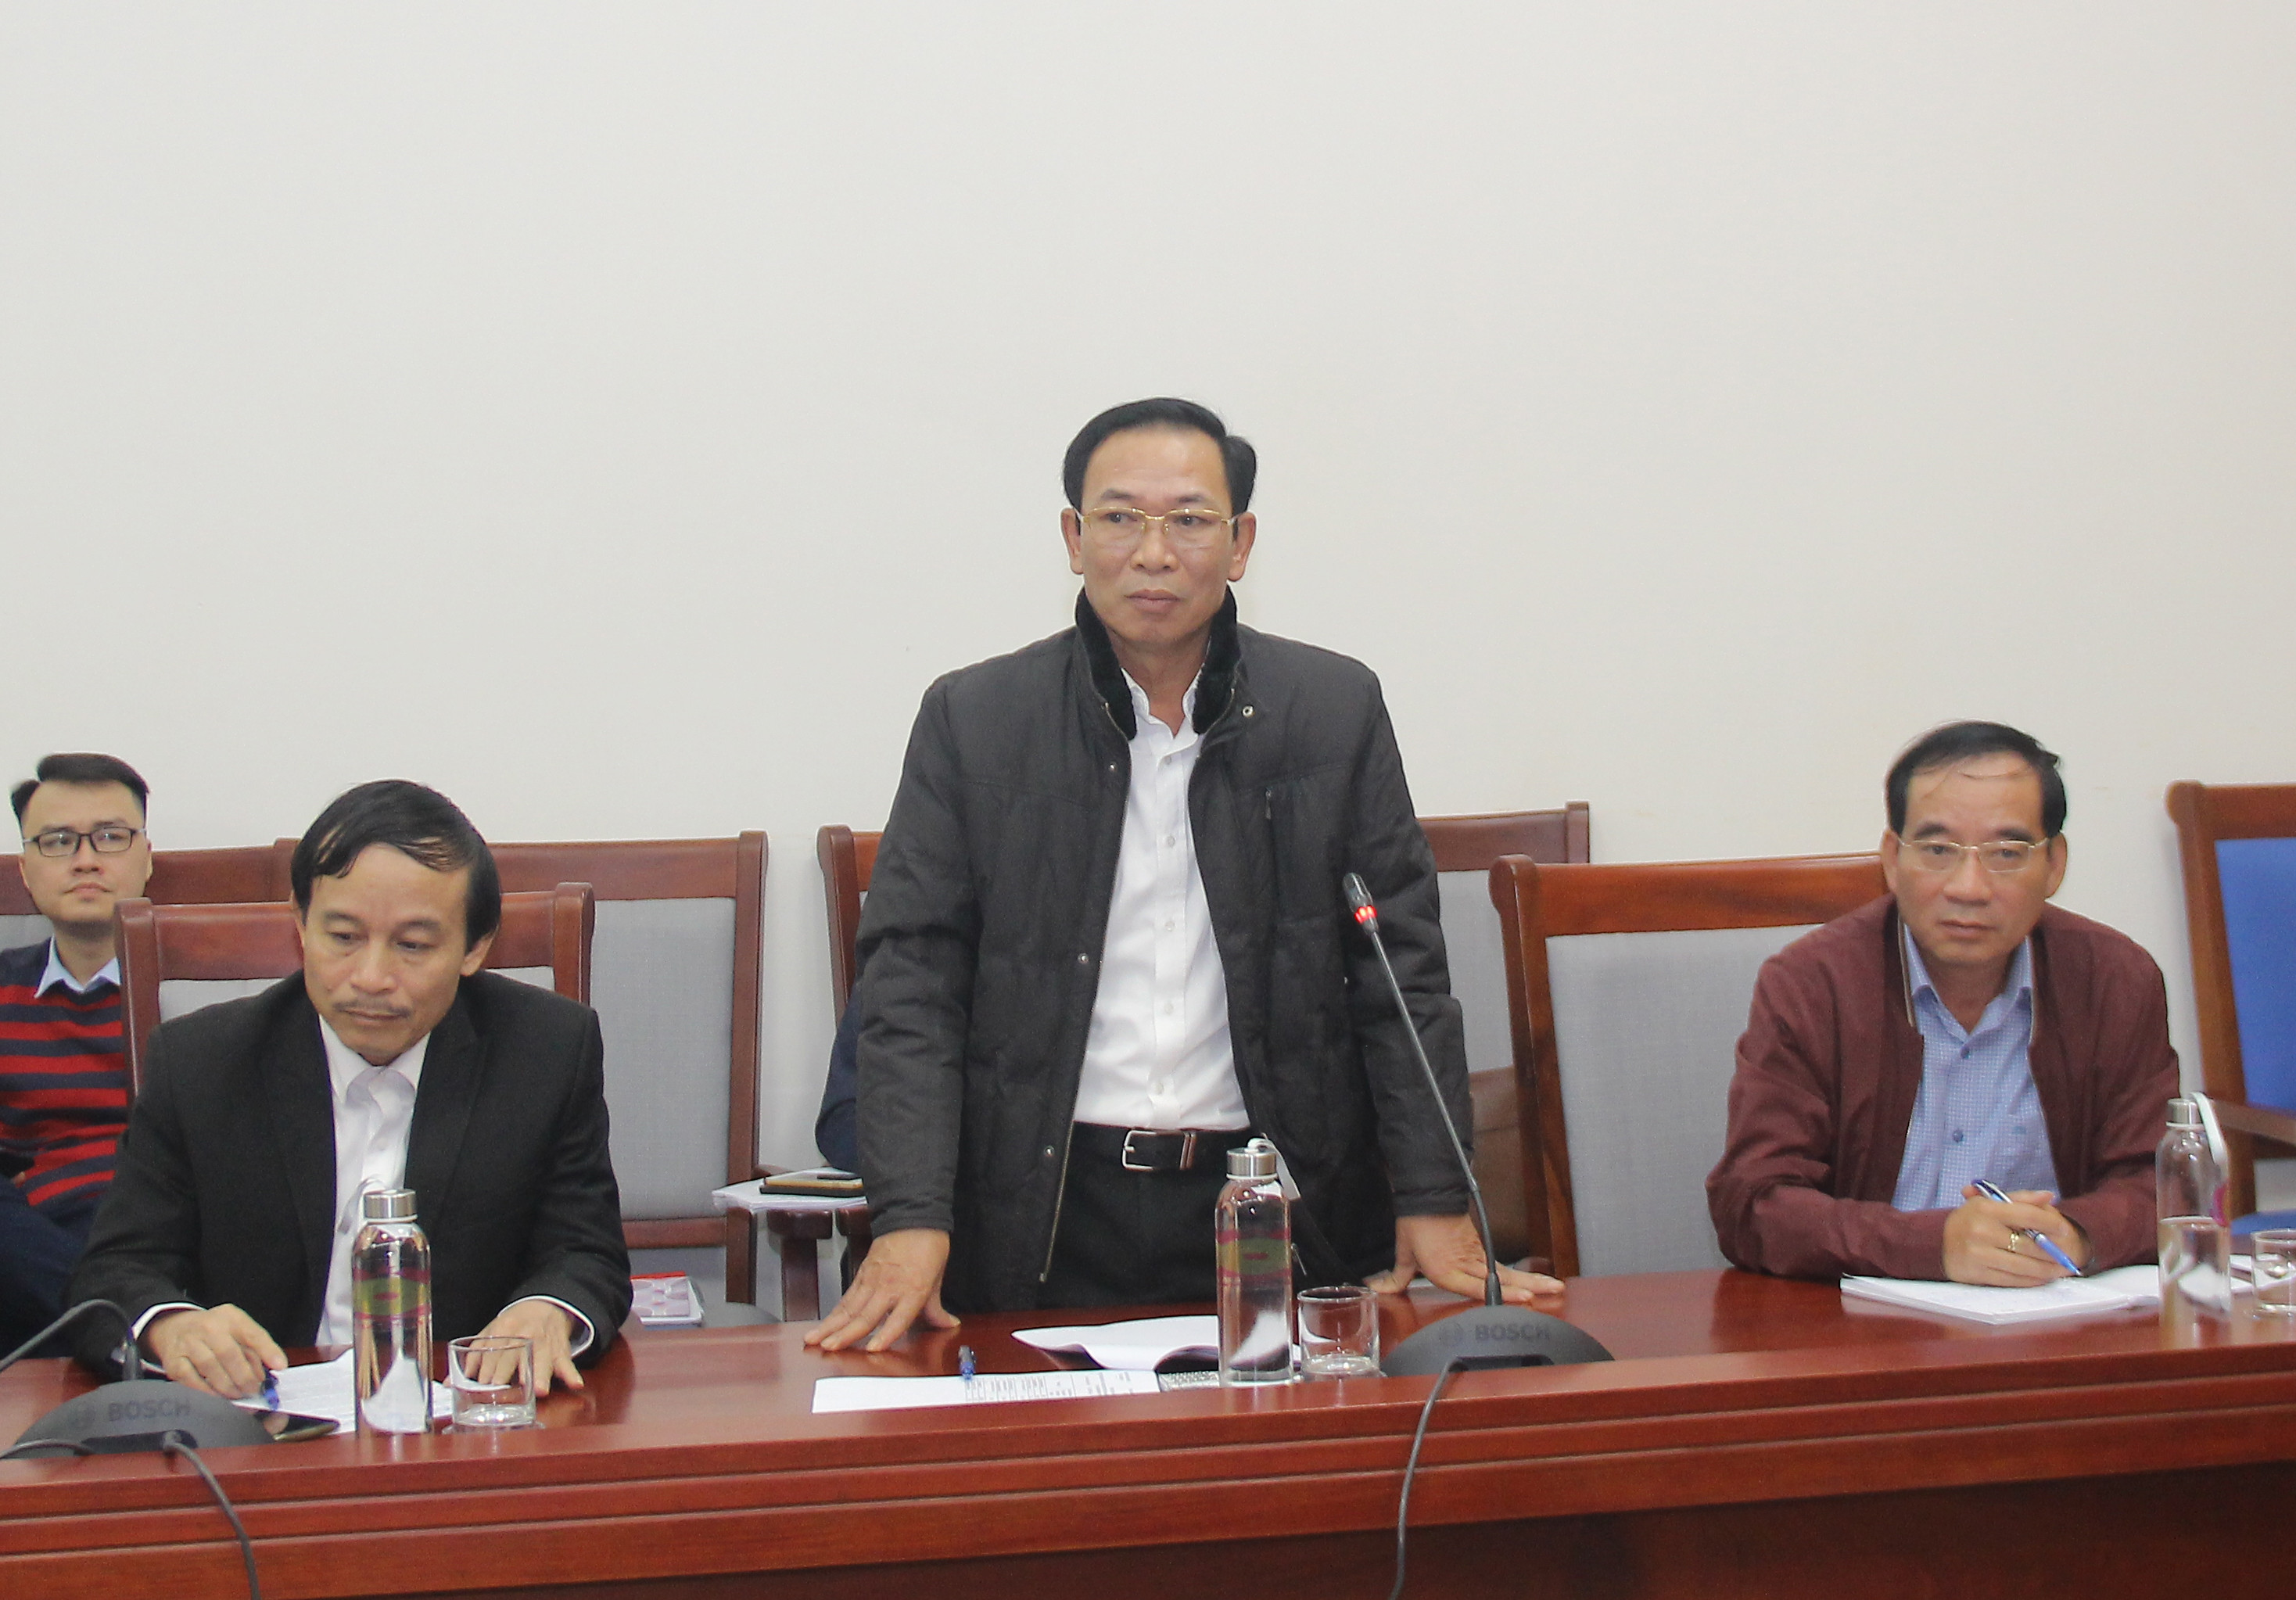 Giám đốc Sở Tài chính - Nguyễn Xuân Hải cho rằng cần tìm giải pháp chung cho các dự án, tránh đổ lỗi trách nhiệm cho nhau. Ảnh: Mai Hoa